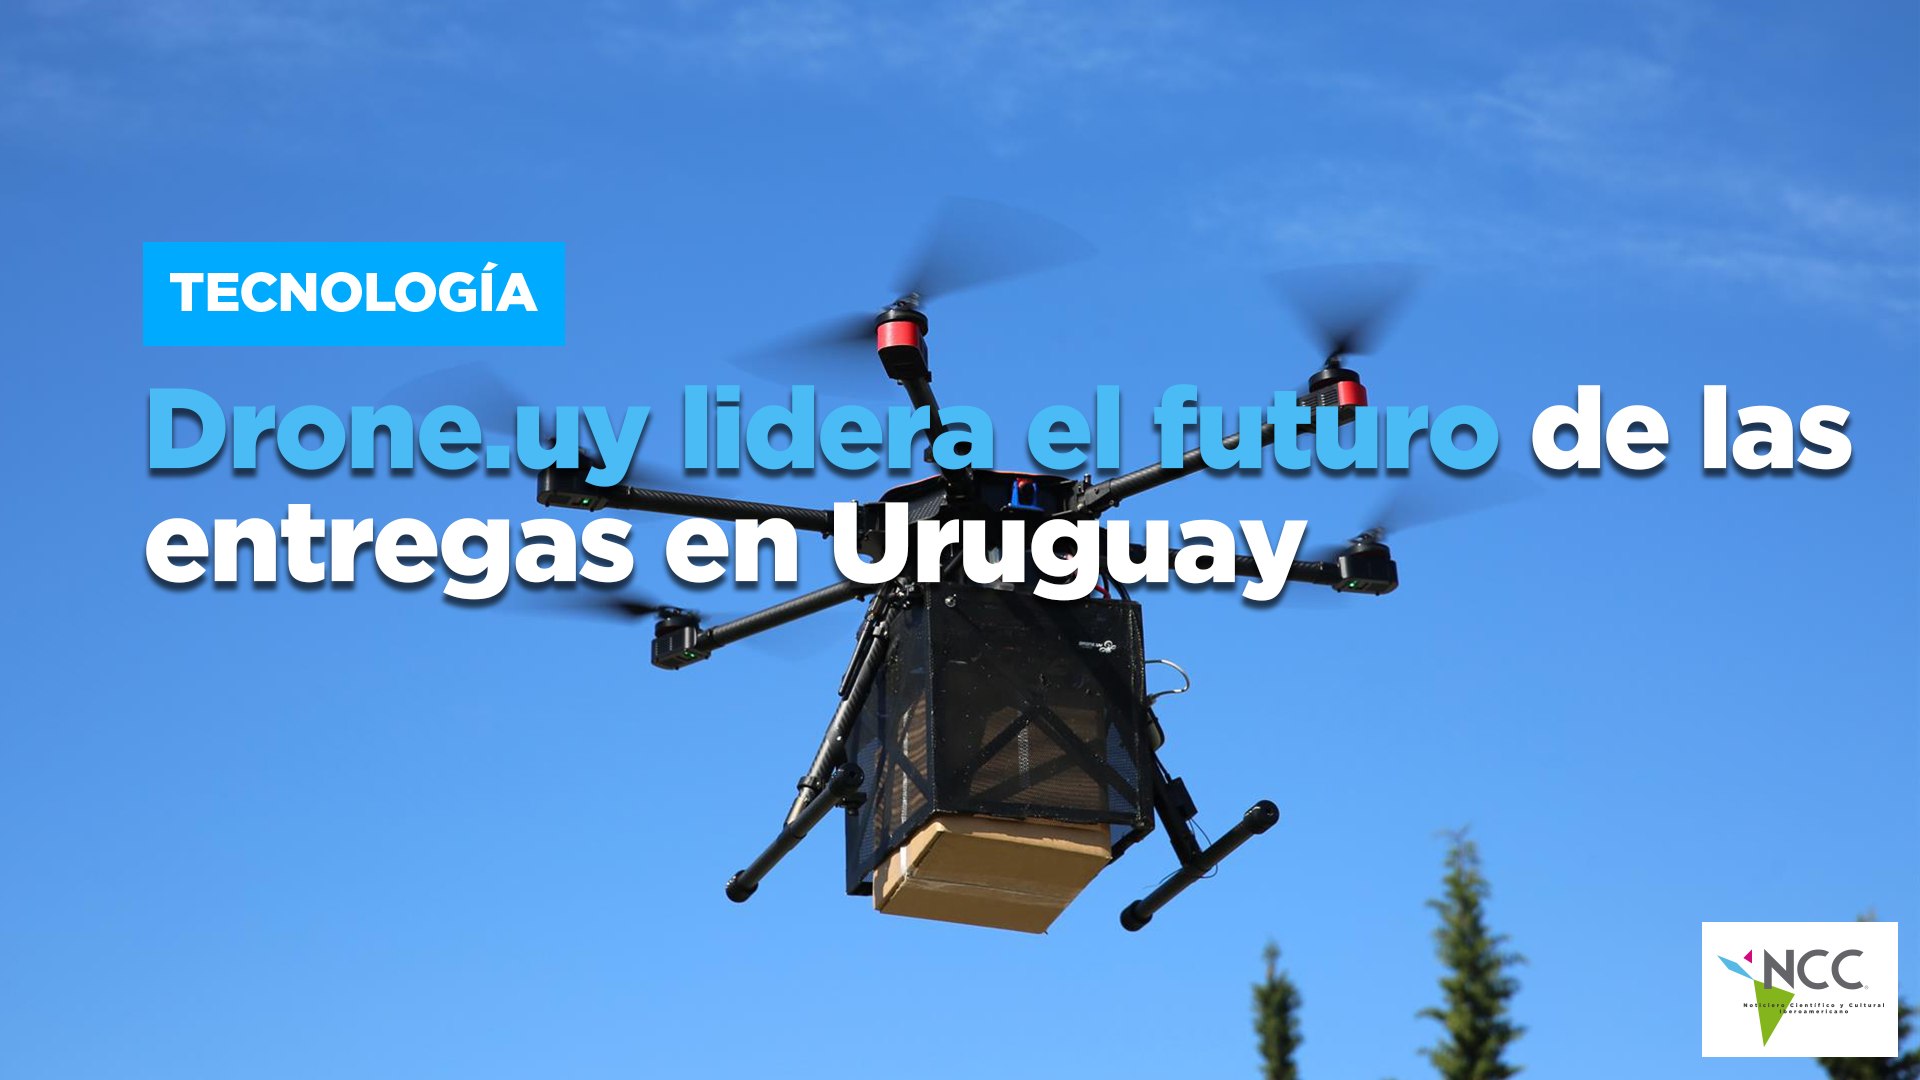 Drone.uy lidera el futuro de las entregas en Uruguay - Vídeo Dailymotion